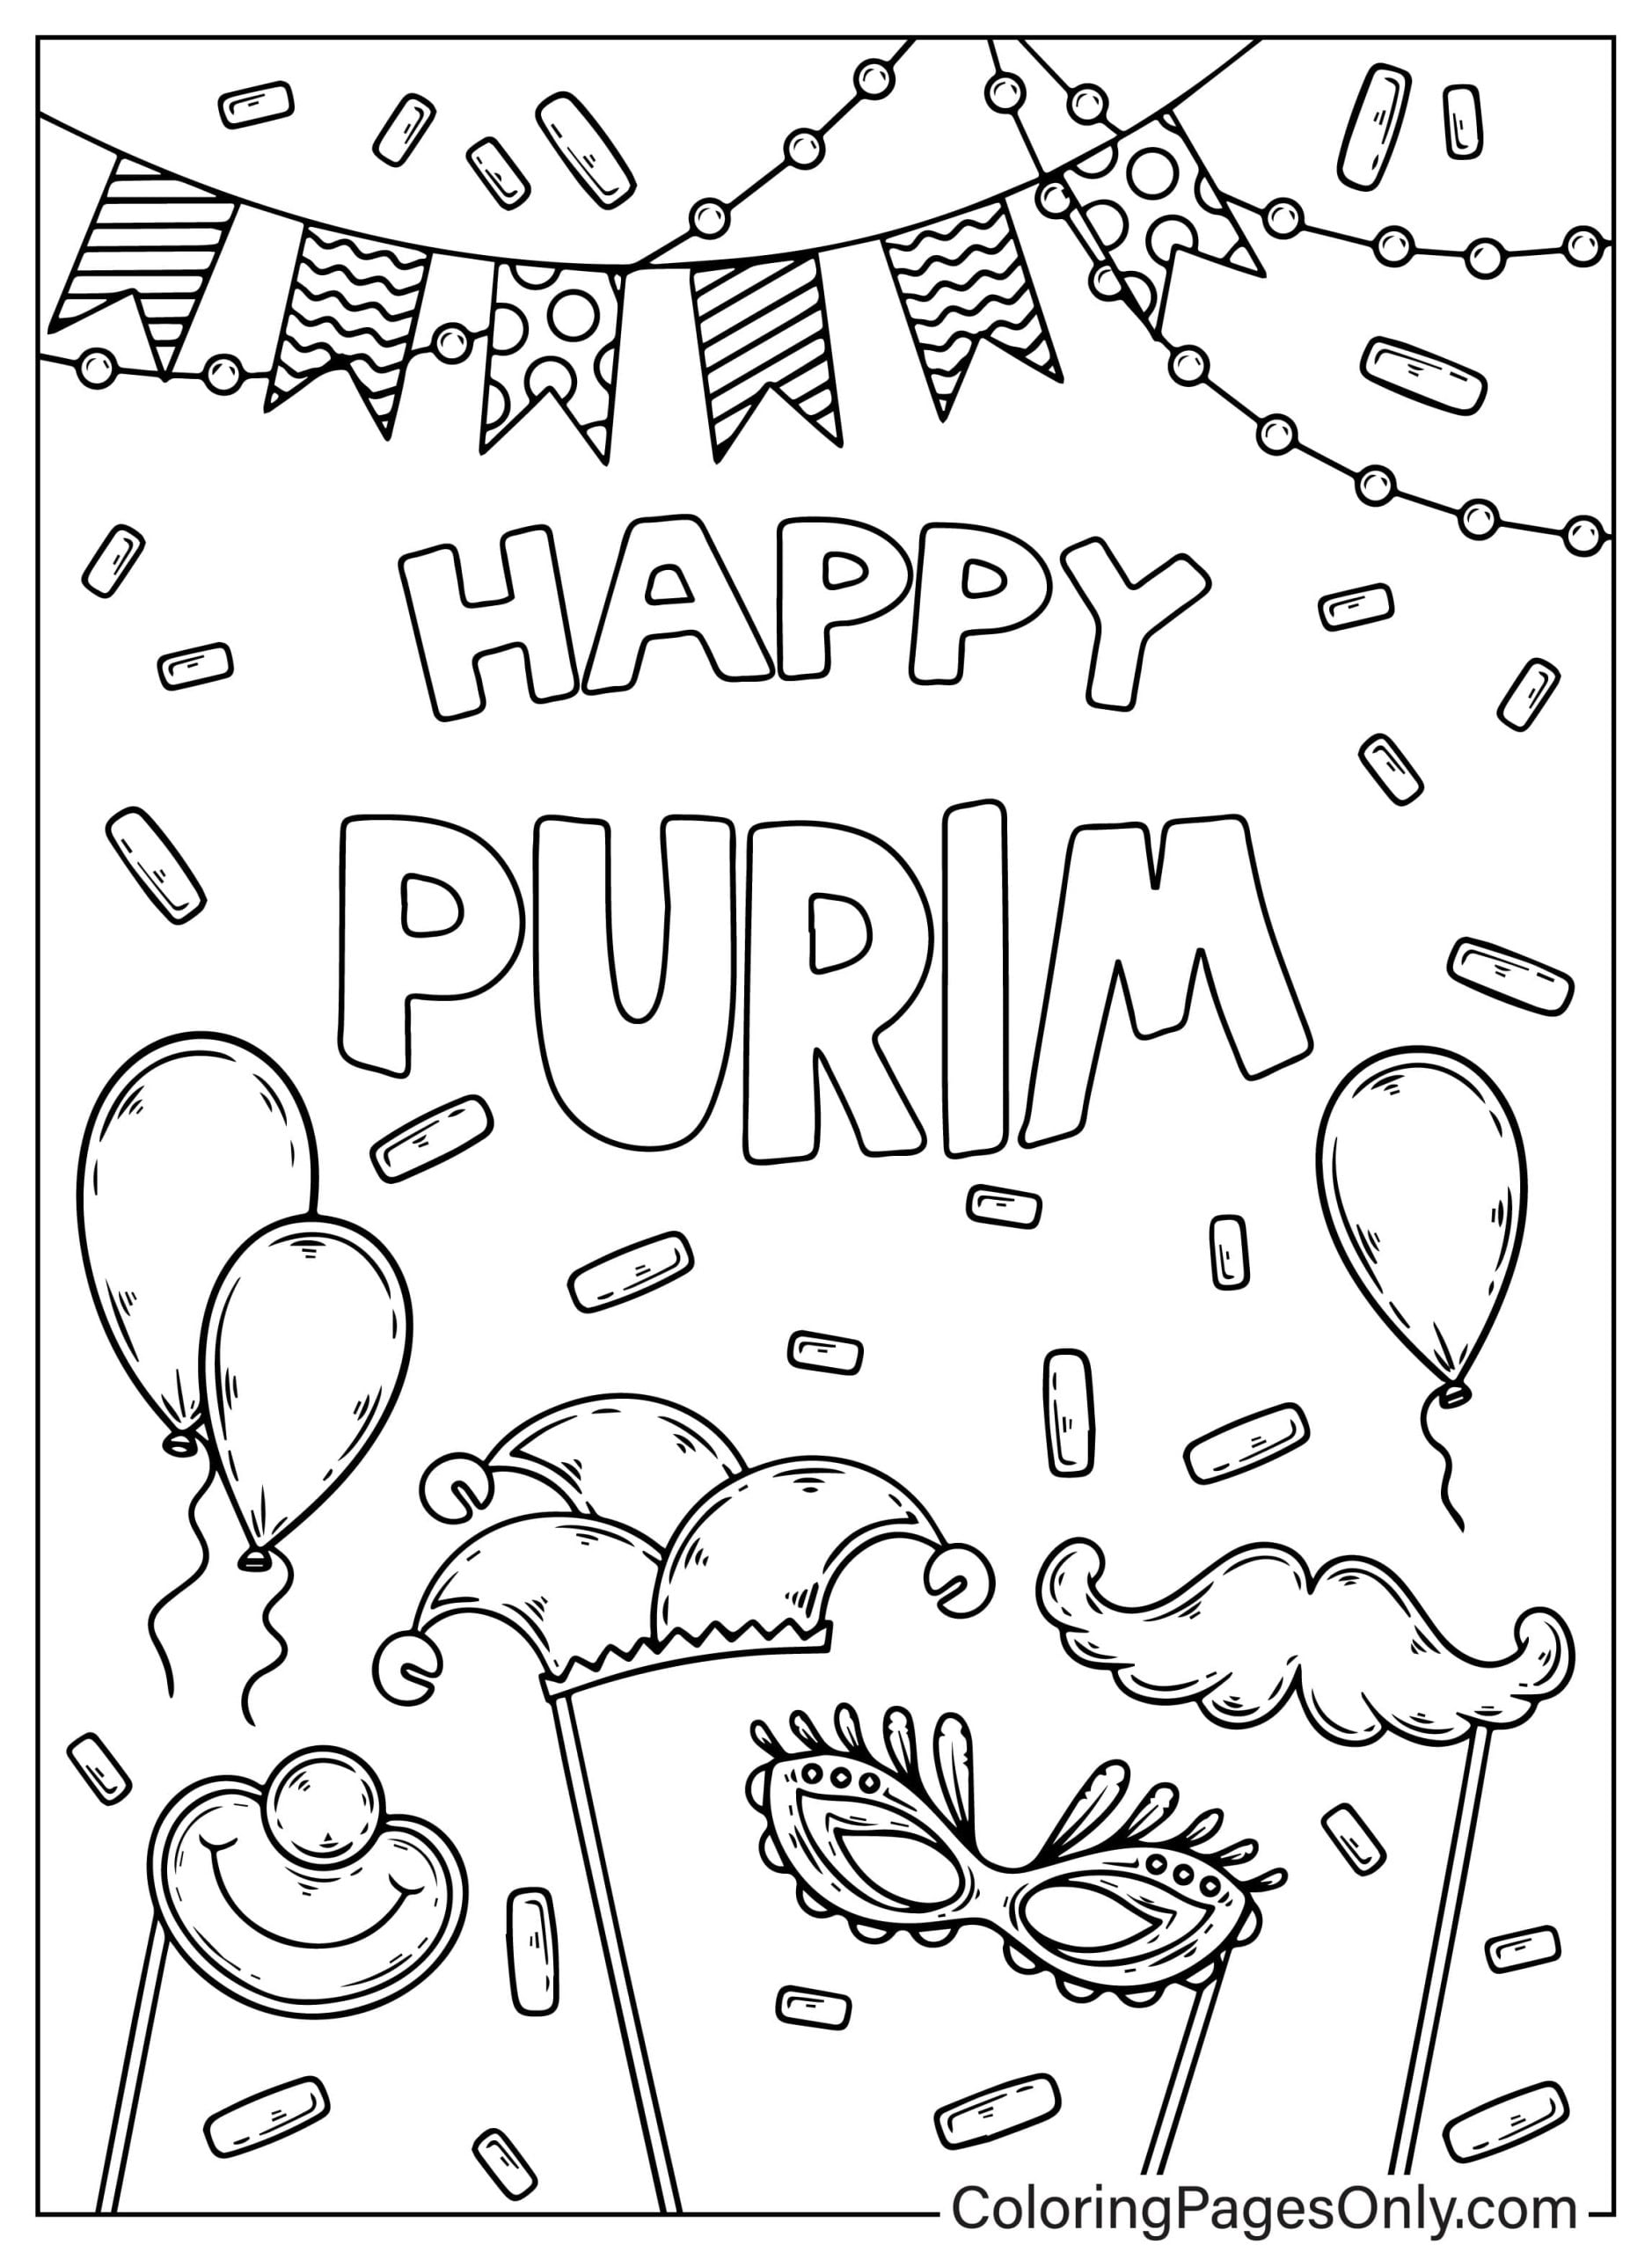 Página para colorear de Purim feliz de Purim